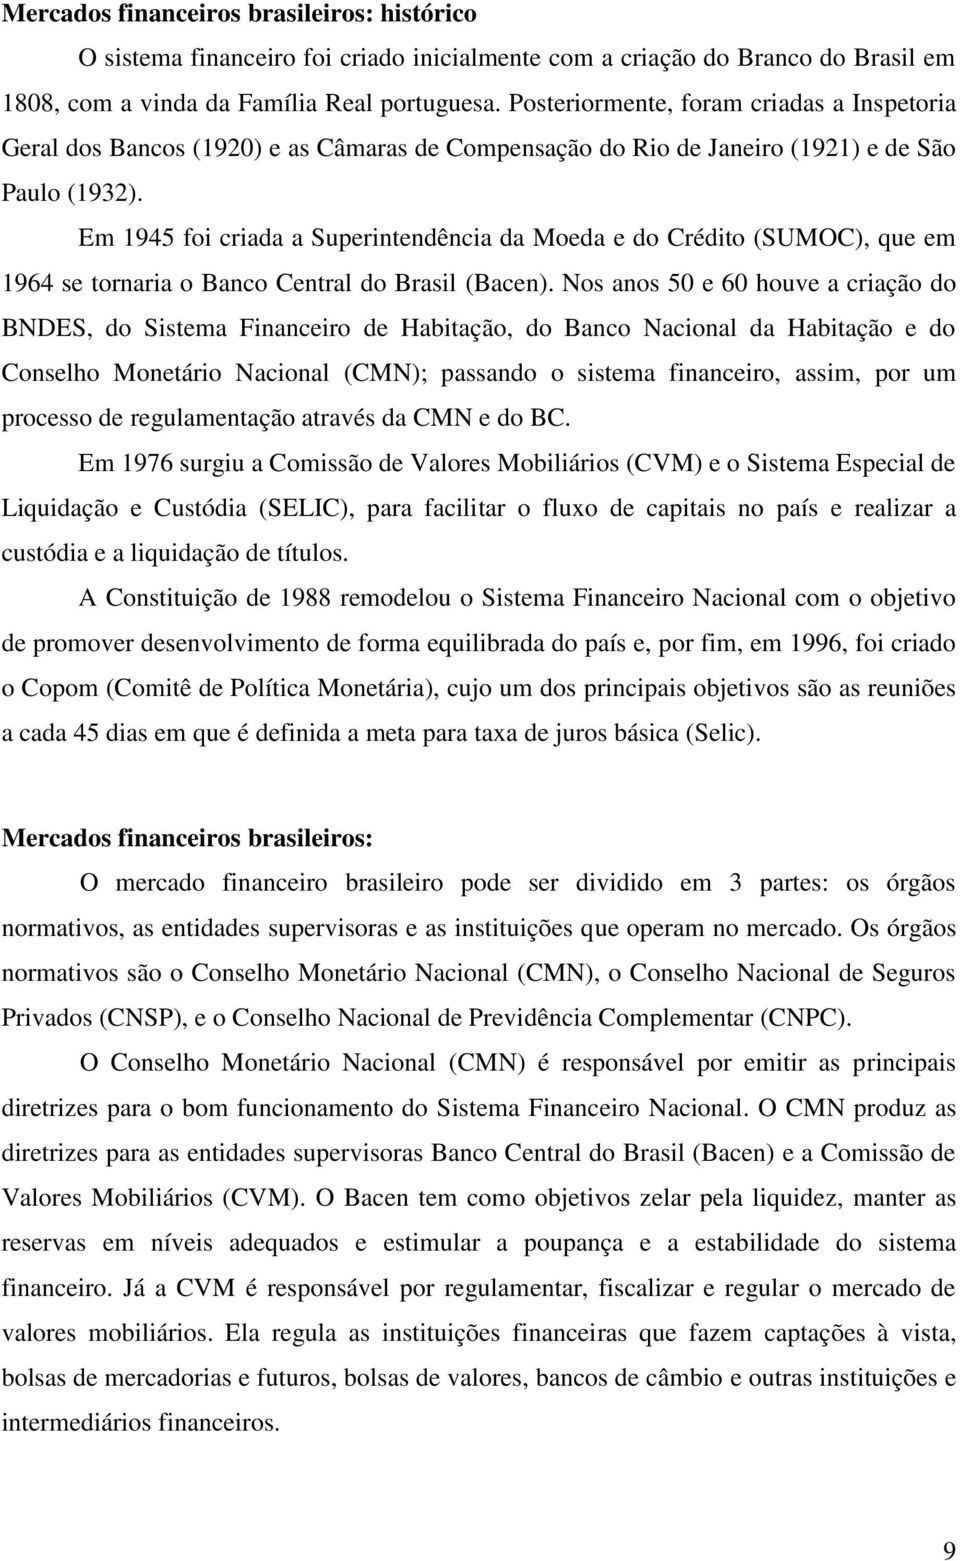 Em 1945 foi criada a Superintendência da Moeda e do Crédito (SUMOC), que em 1964 se tornaria o Banco Central do Brasil (Bacen).